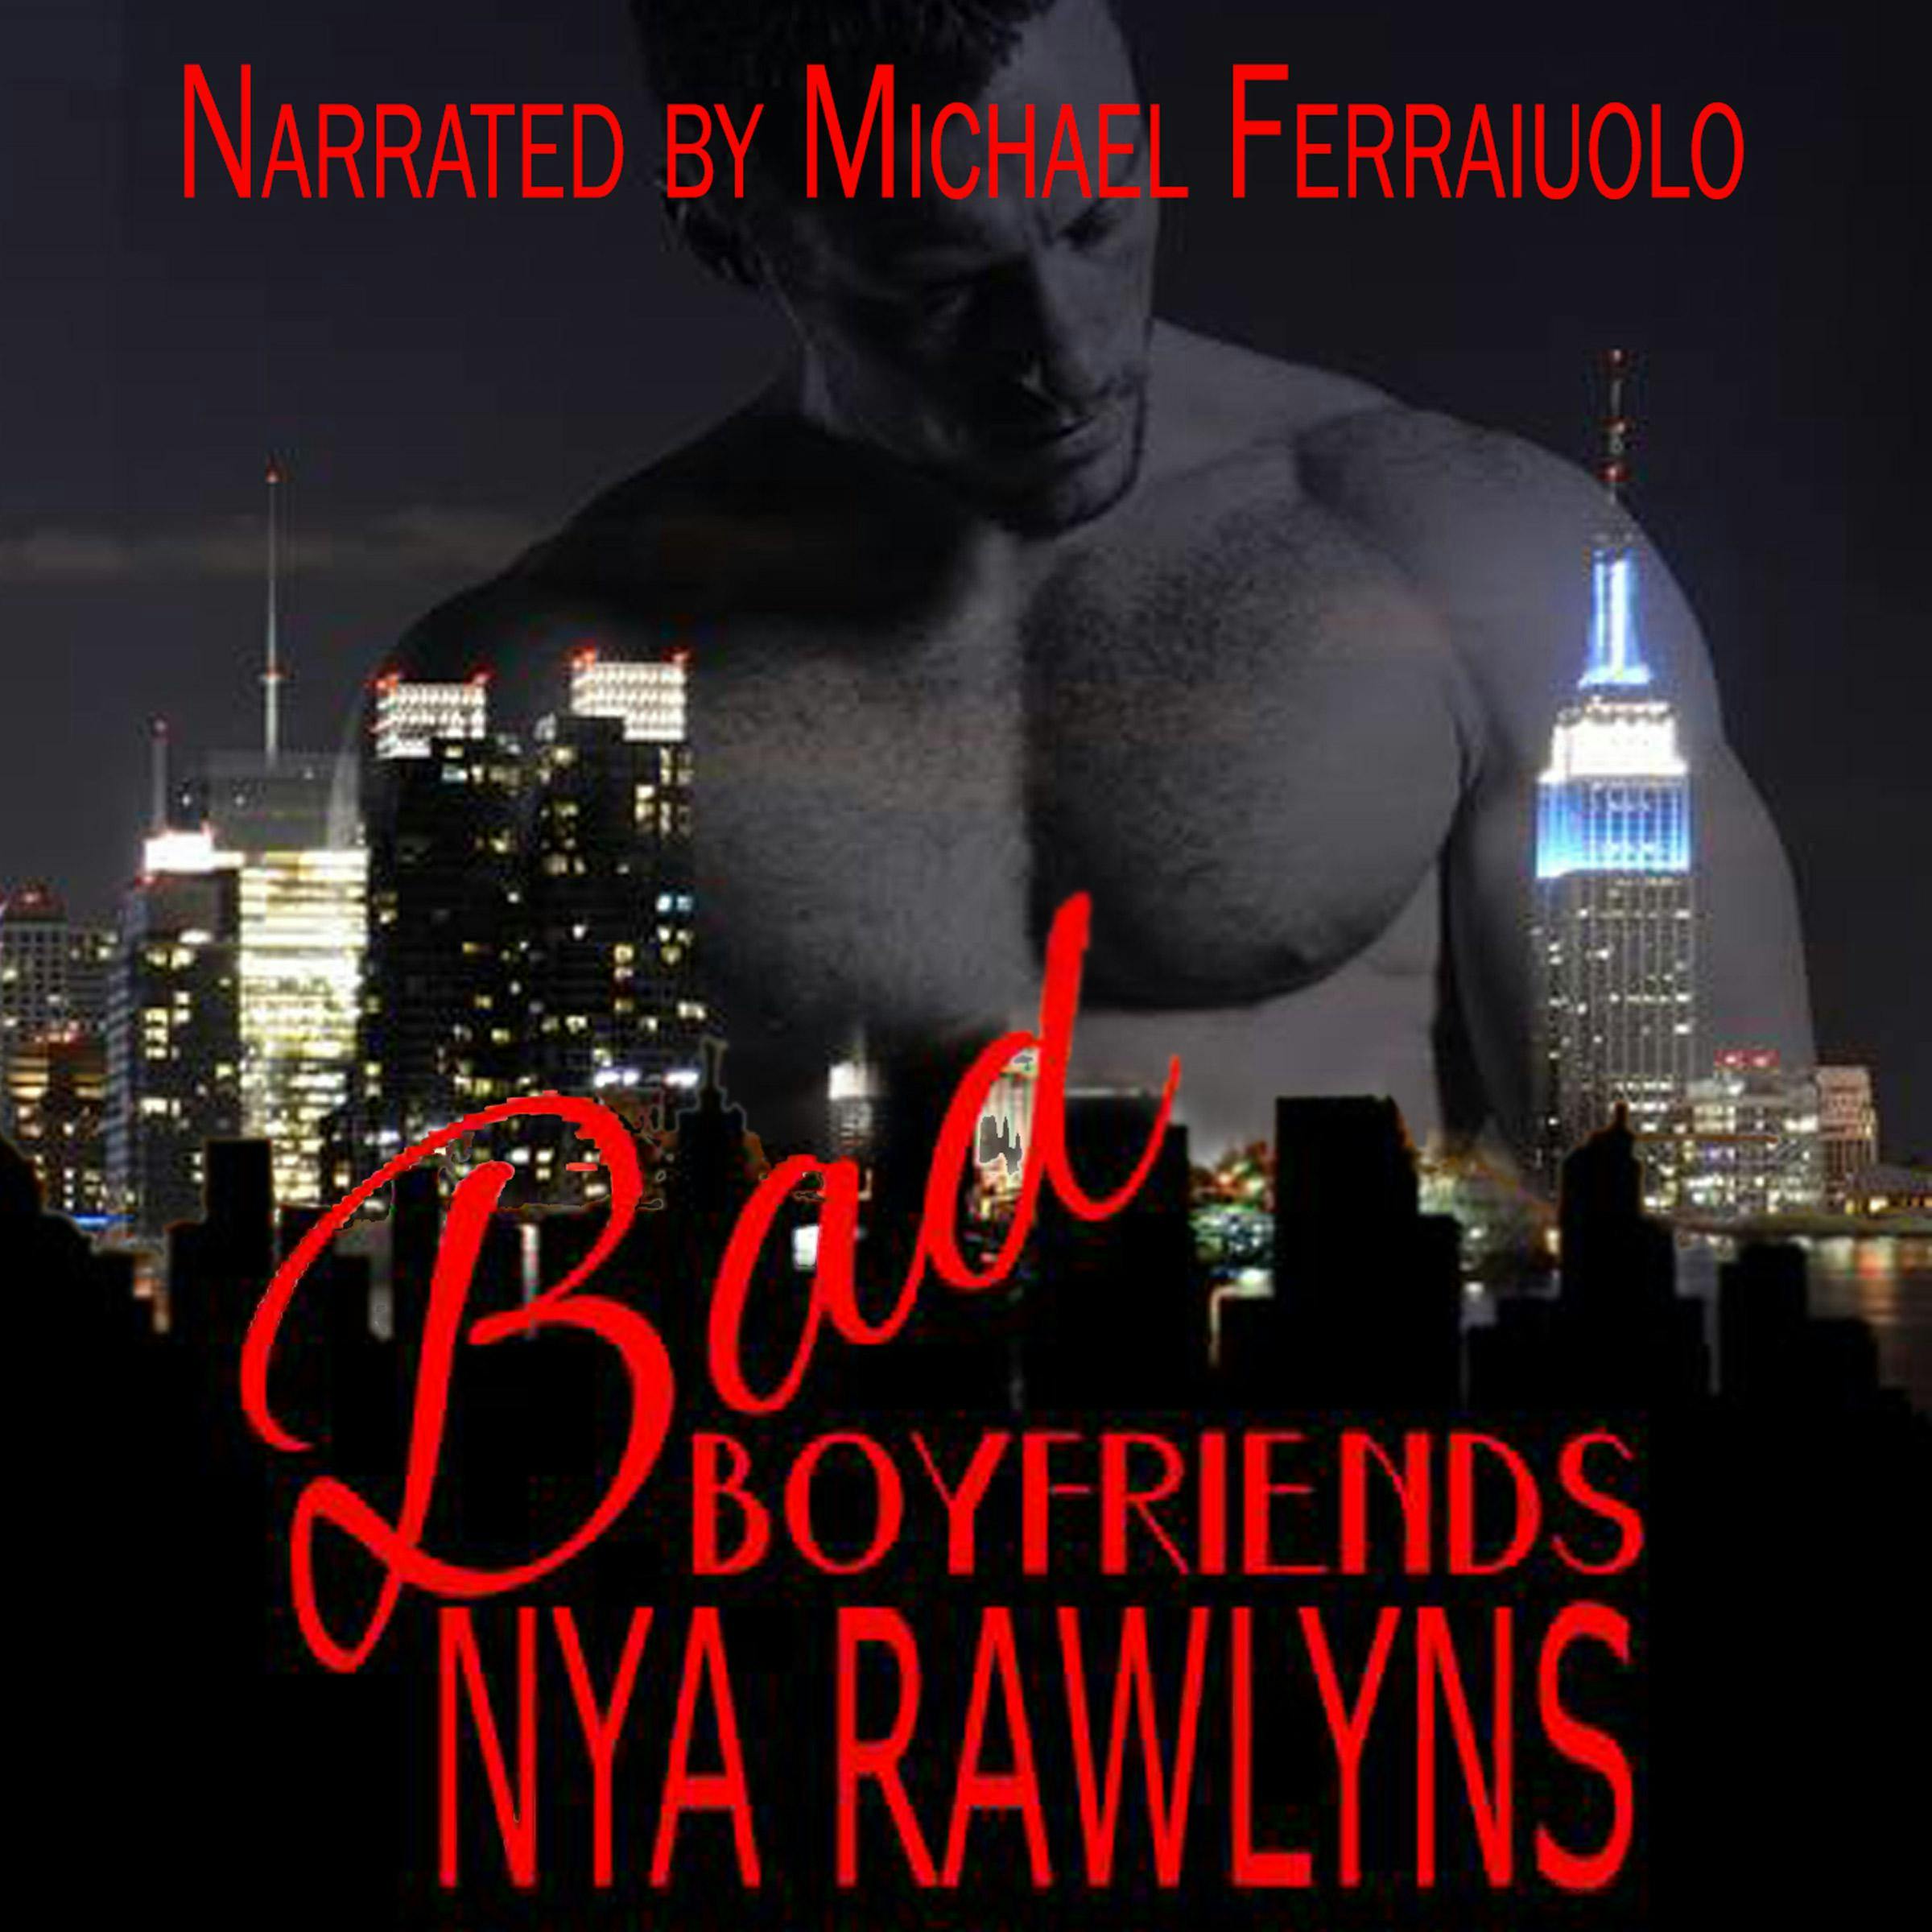 Bad Boyfriends Box Set - Nya Rawlyns